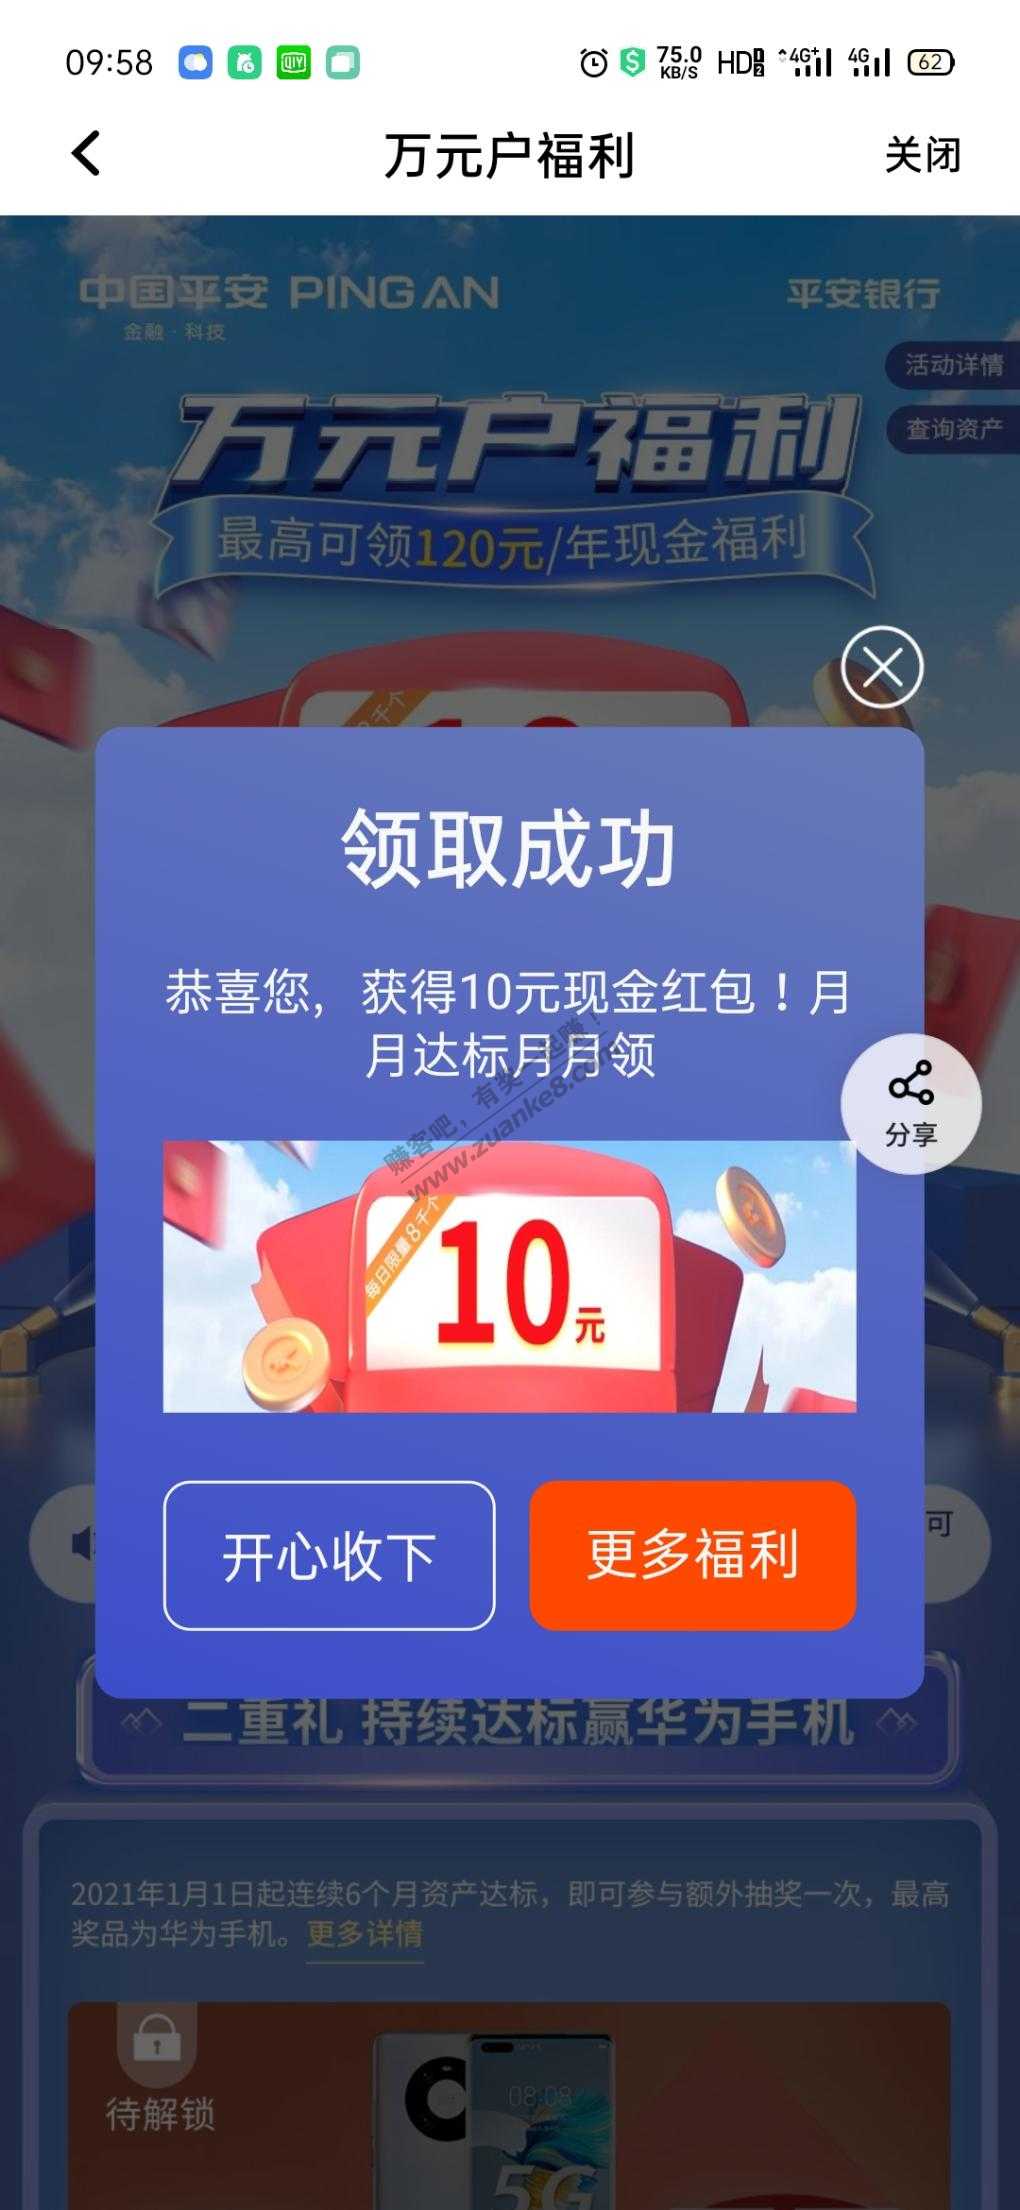 提醒:平安口袋银行 资产达标10元-惠小助(52huixz.com)